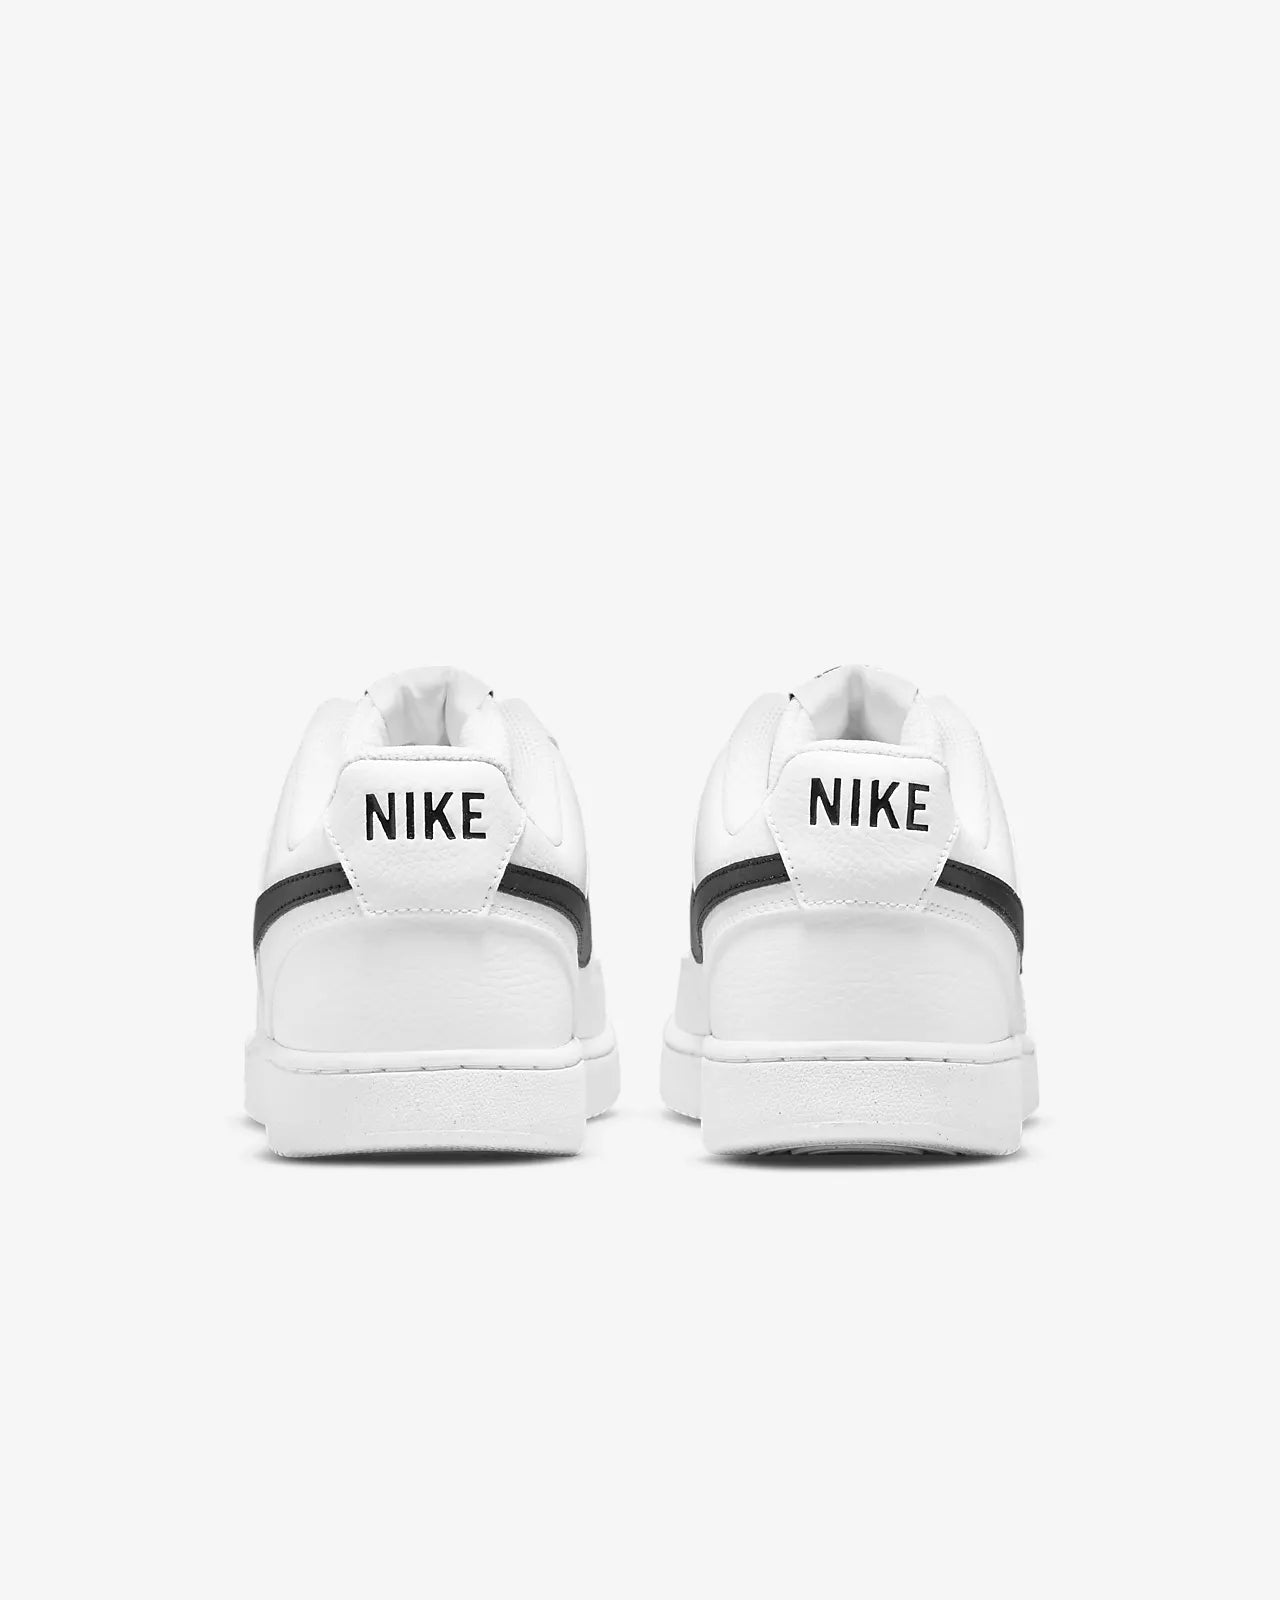 Nike Court Vision LO nn b/w - black and white - Nike